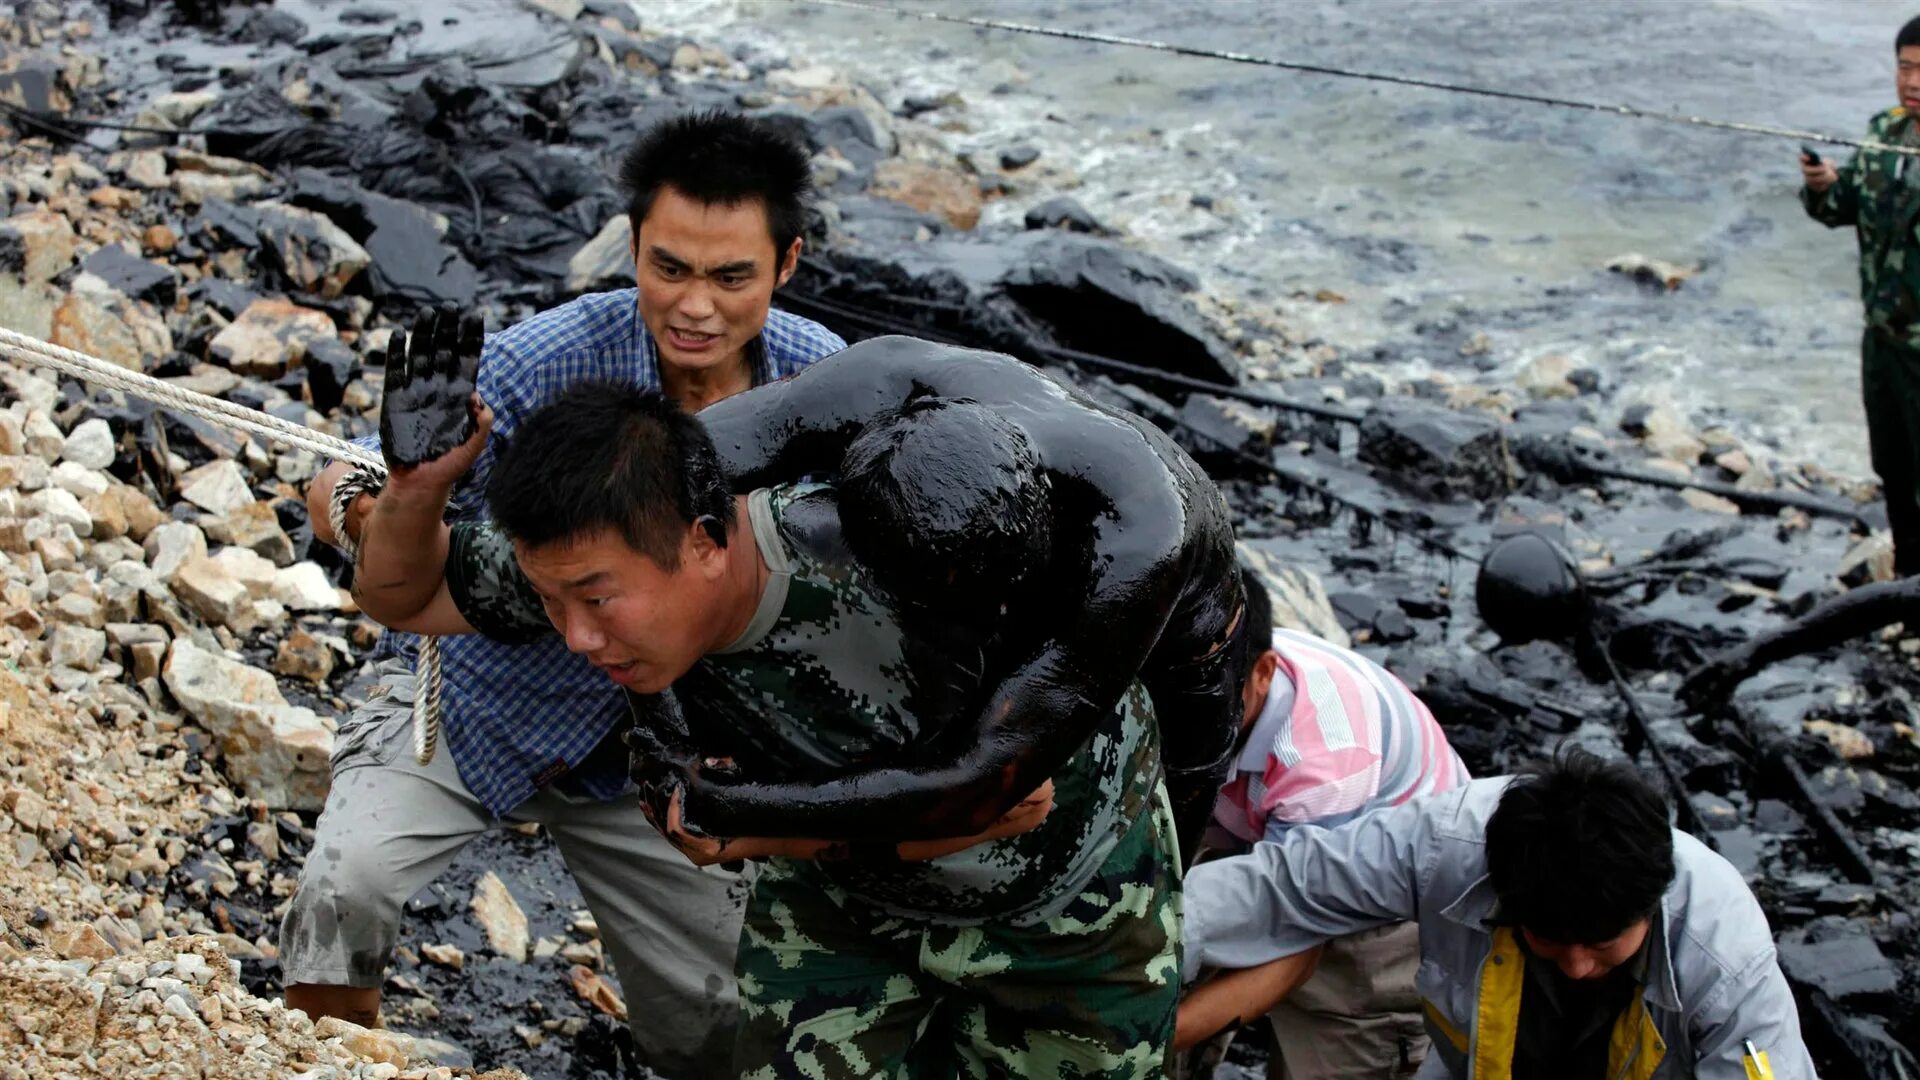 Последствия экологических катастроф. Жертвы экологических катастроф. Экологическая катастрофа в Китае. Последняя природная катастрофа